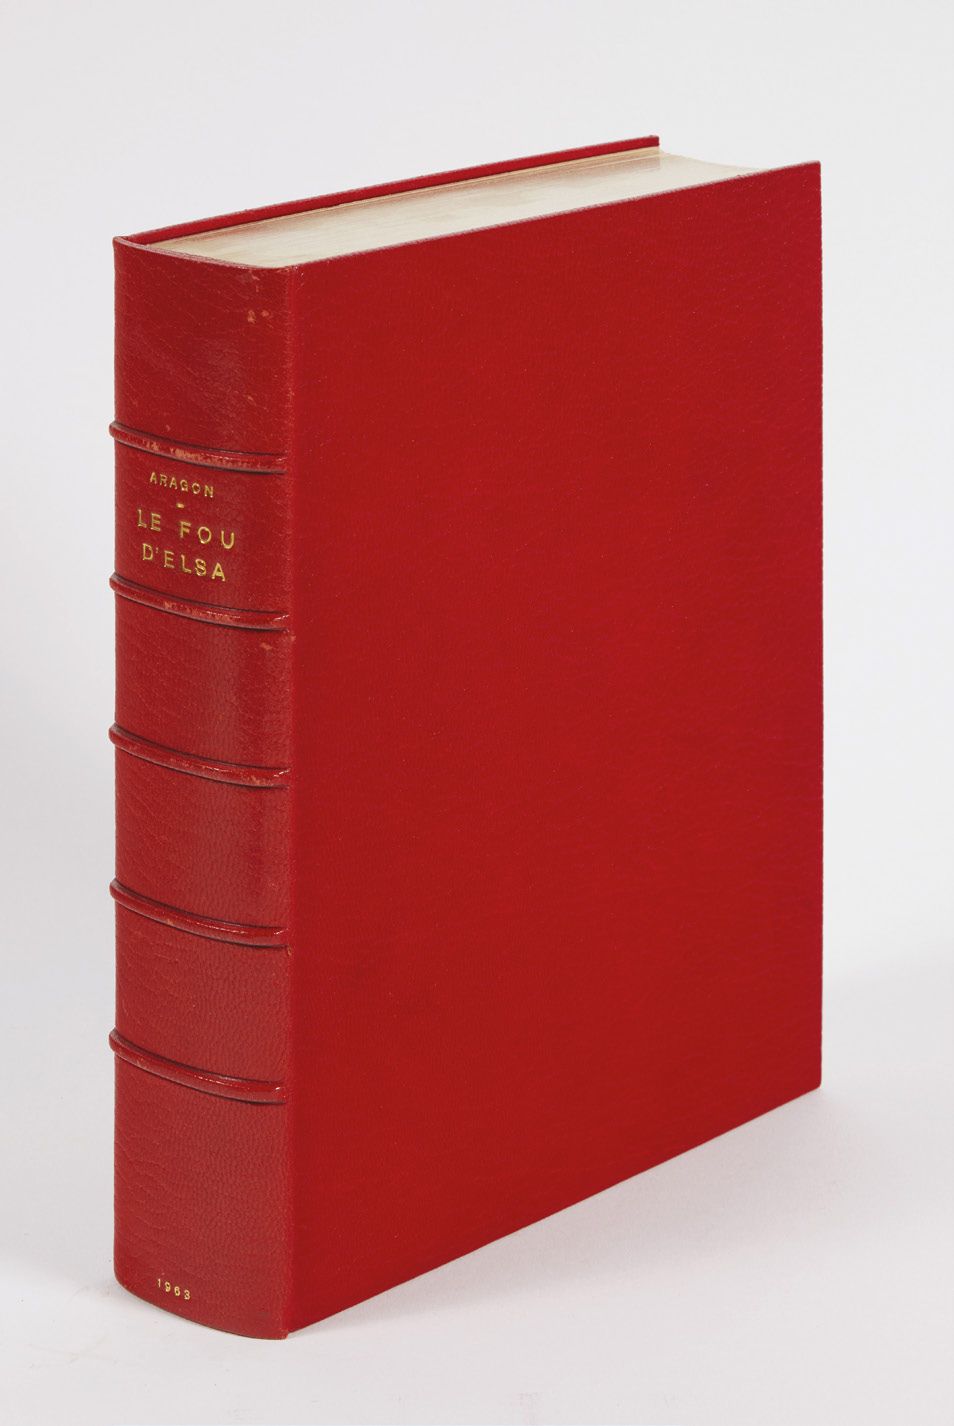 ARAGON, Louis. Le Fou d'Elsa, poems. Paris, Gallimard, 1963; small in-4 red jans&hellip;